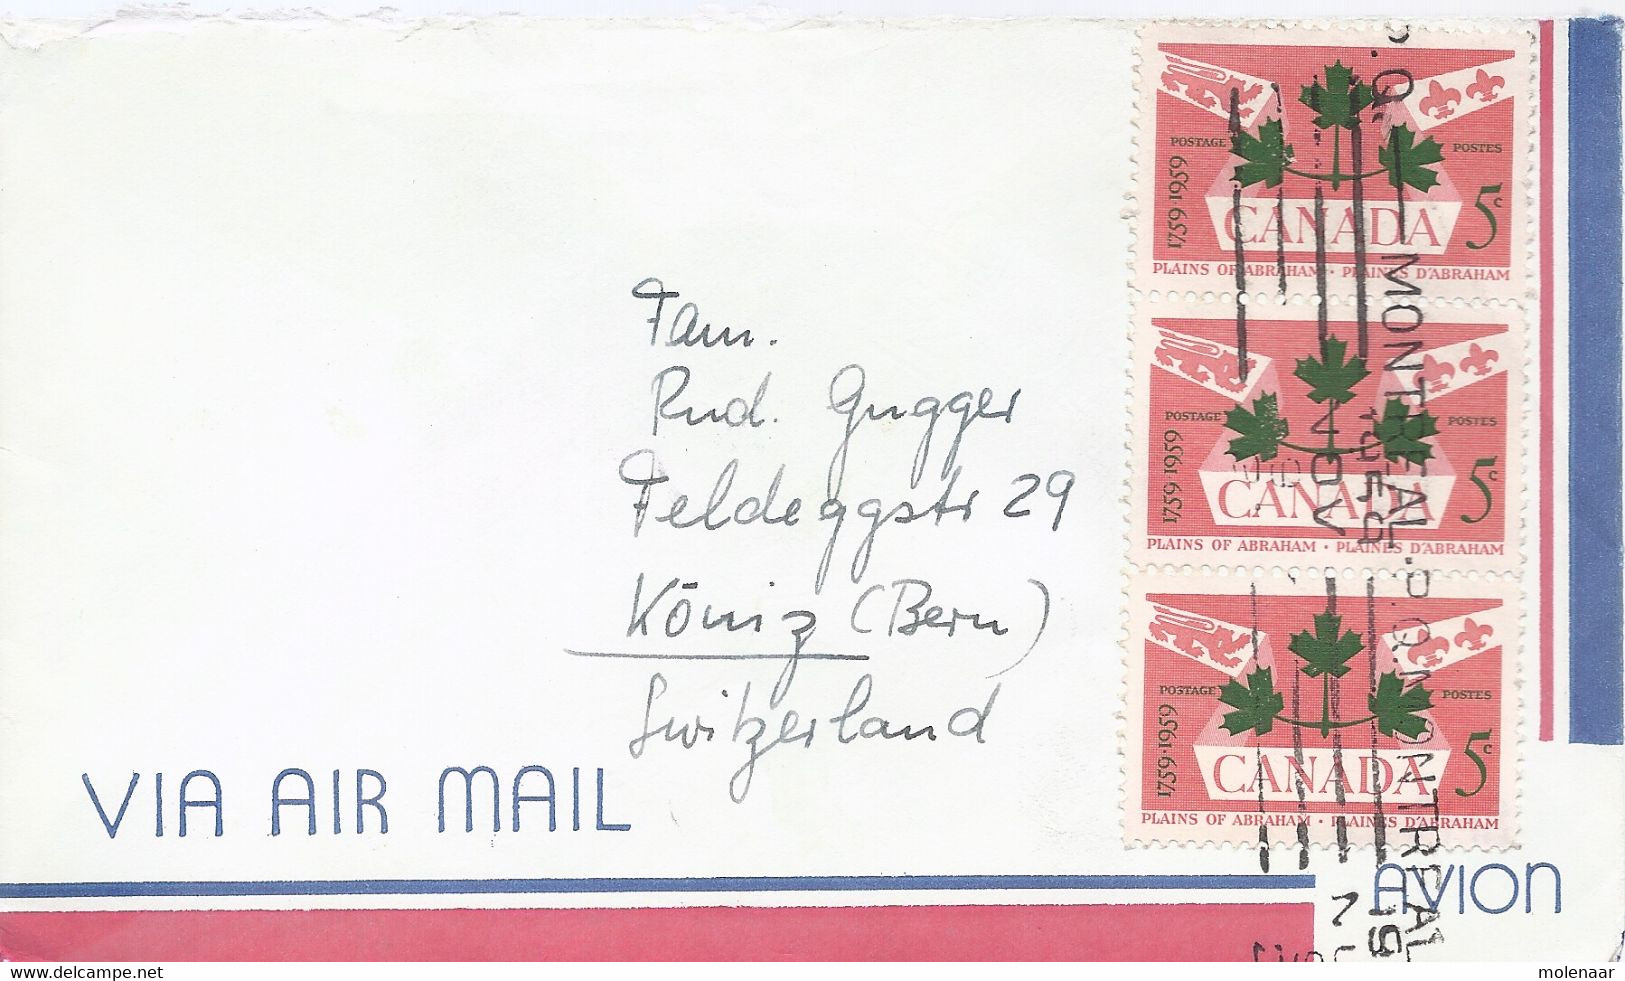 Canada Luchtpostbrief Uit 1959 Met 3 Zegels (5131) - Briefe U. Dokumente